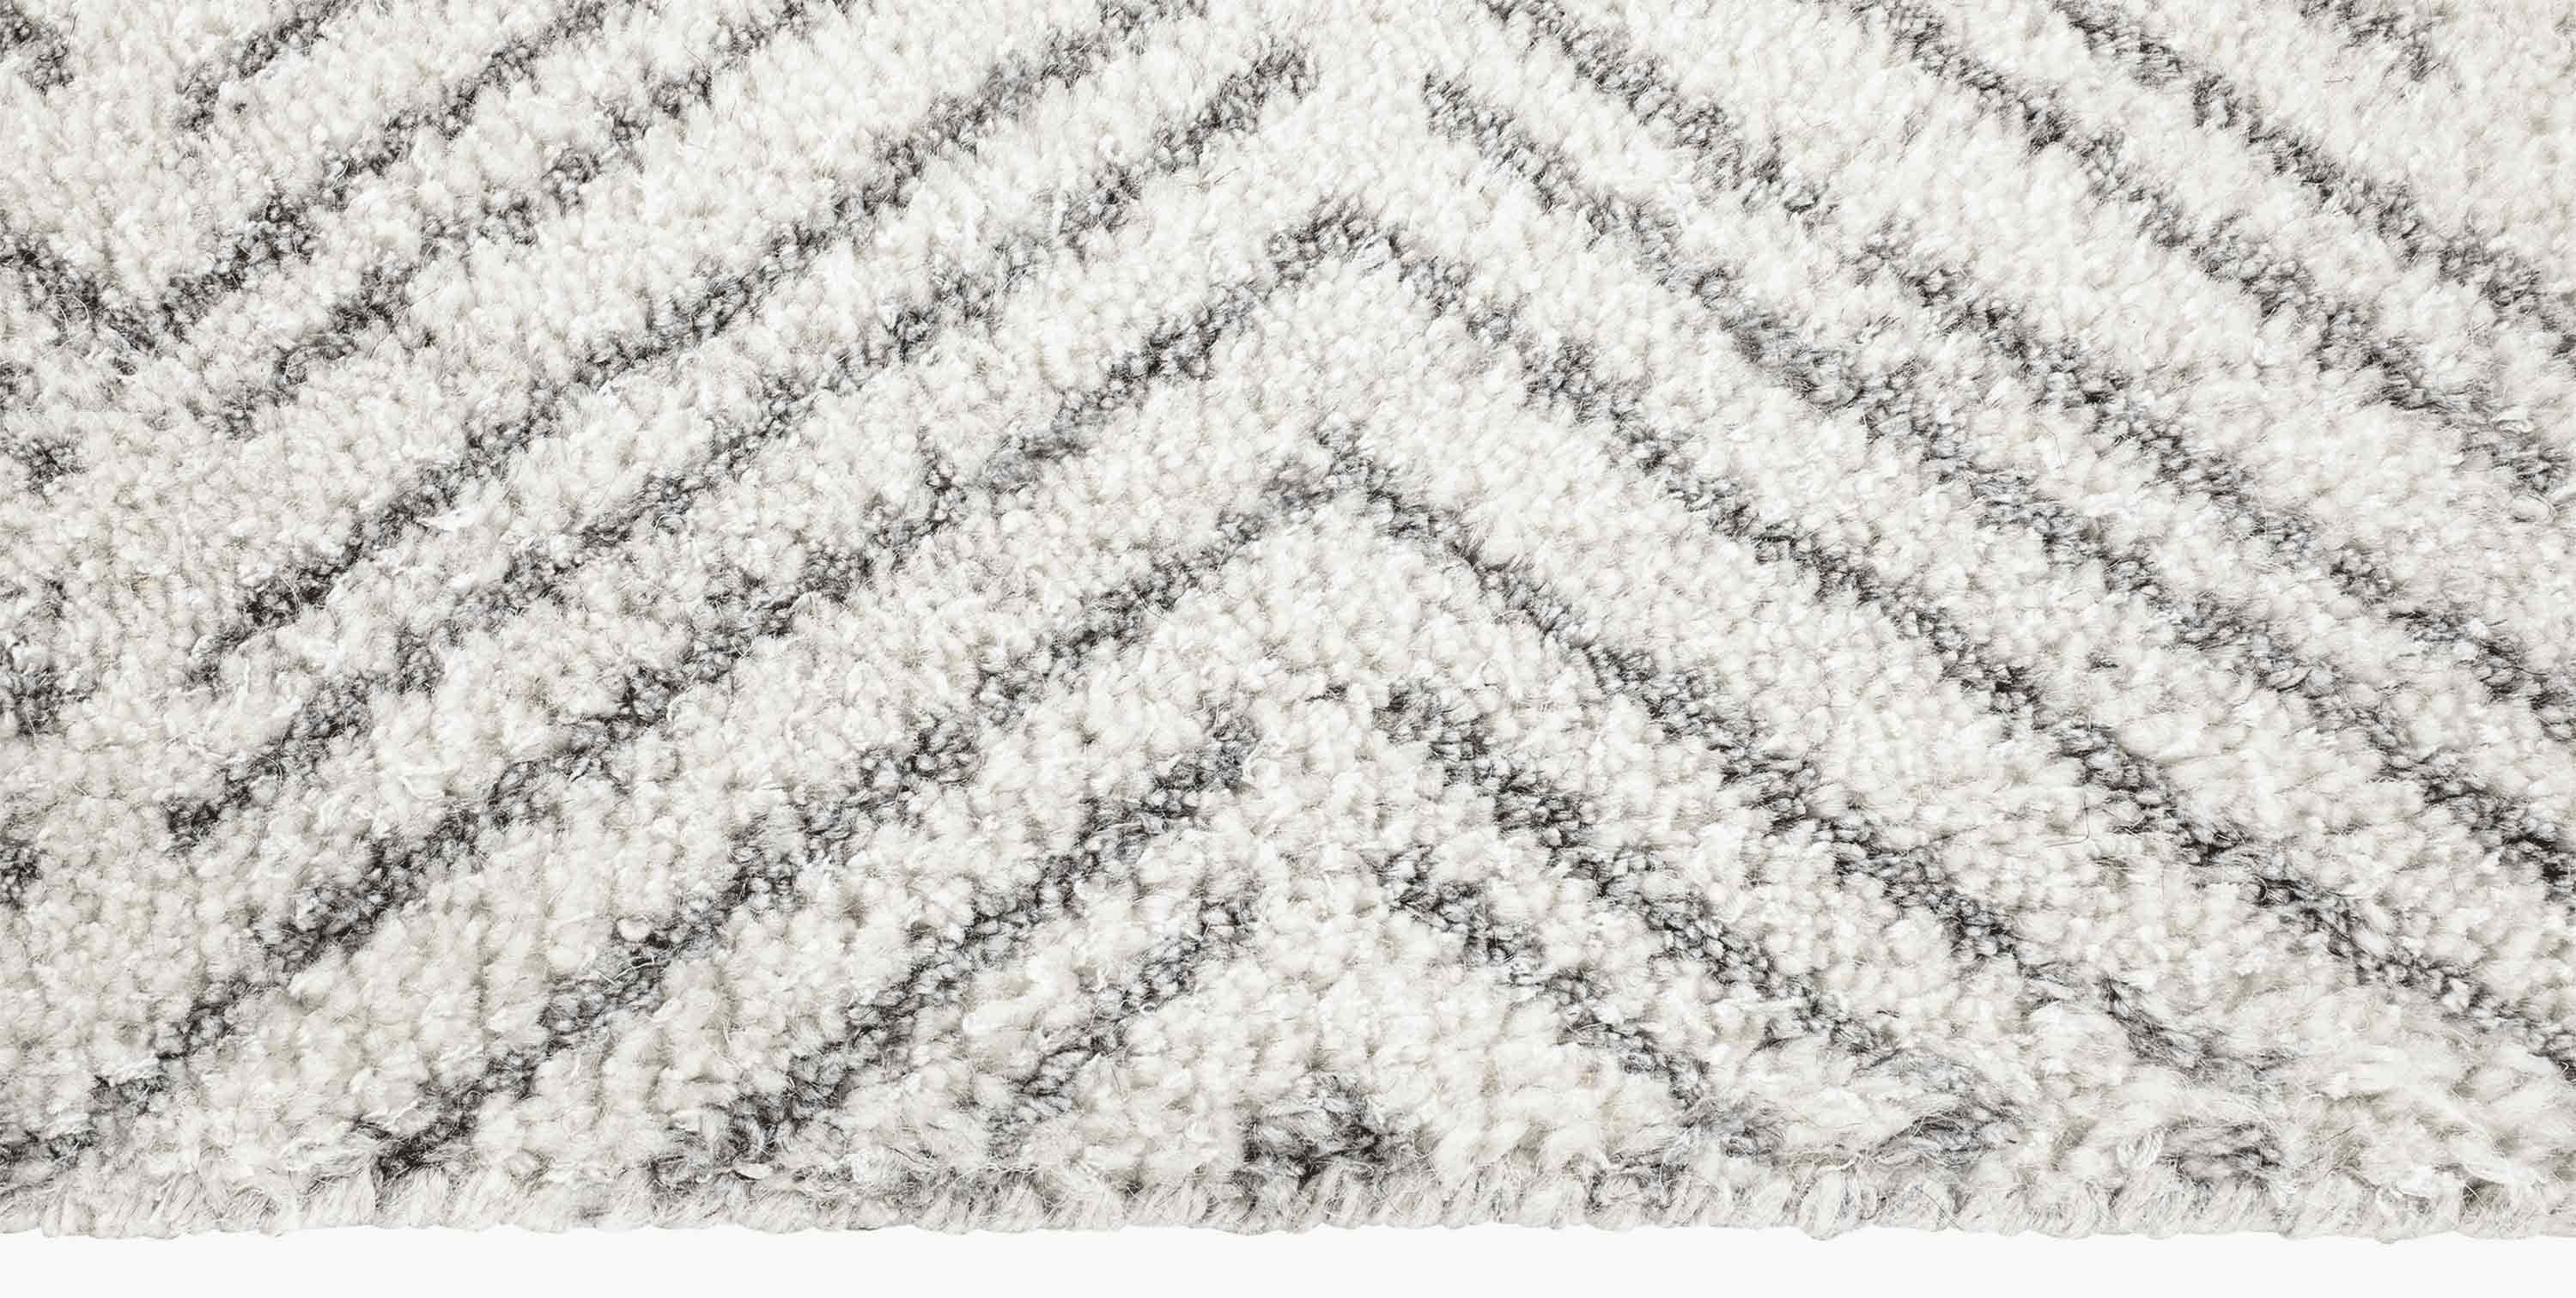 For Sale: White (White/Silver) Ben Soleimani Alia Rug– Hand-woven Chevron Wool + Viscose Black/Gray 8'x10' 3